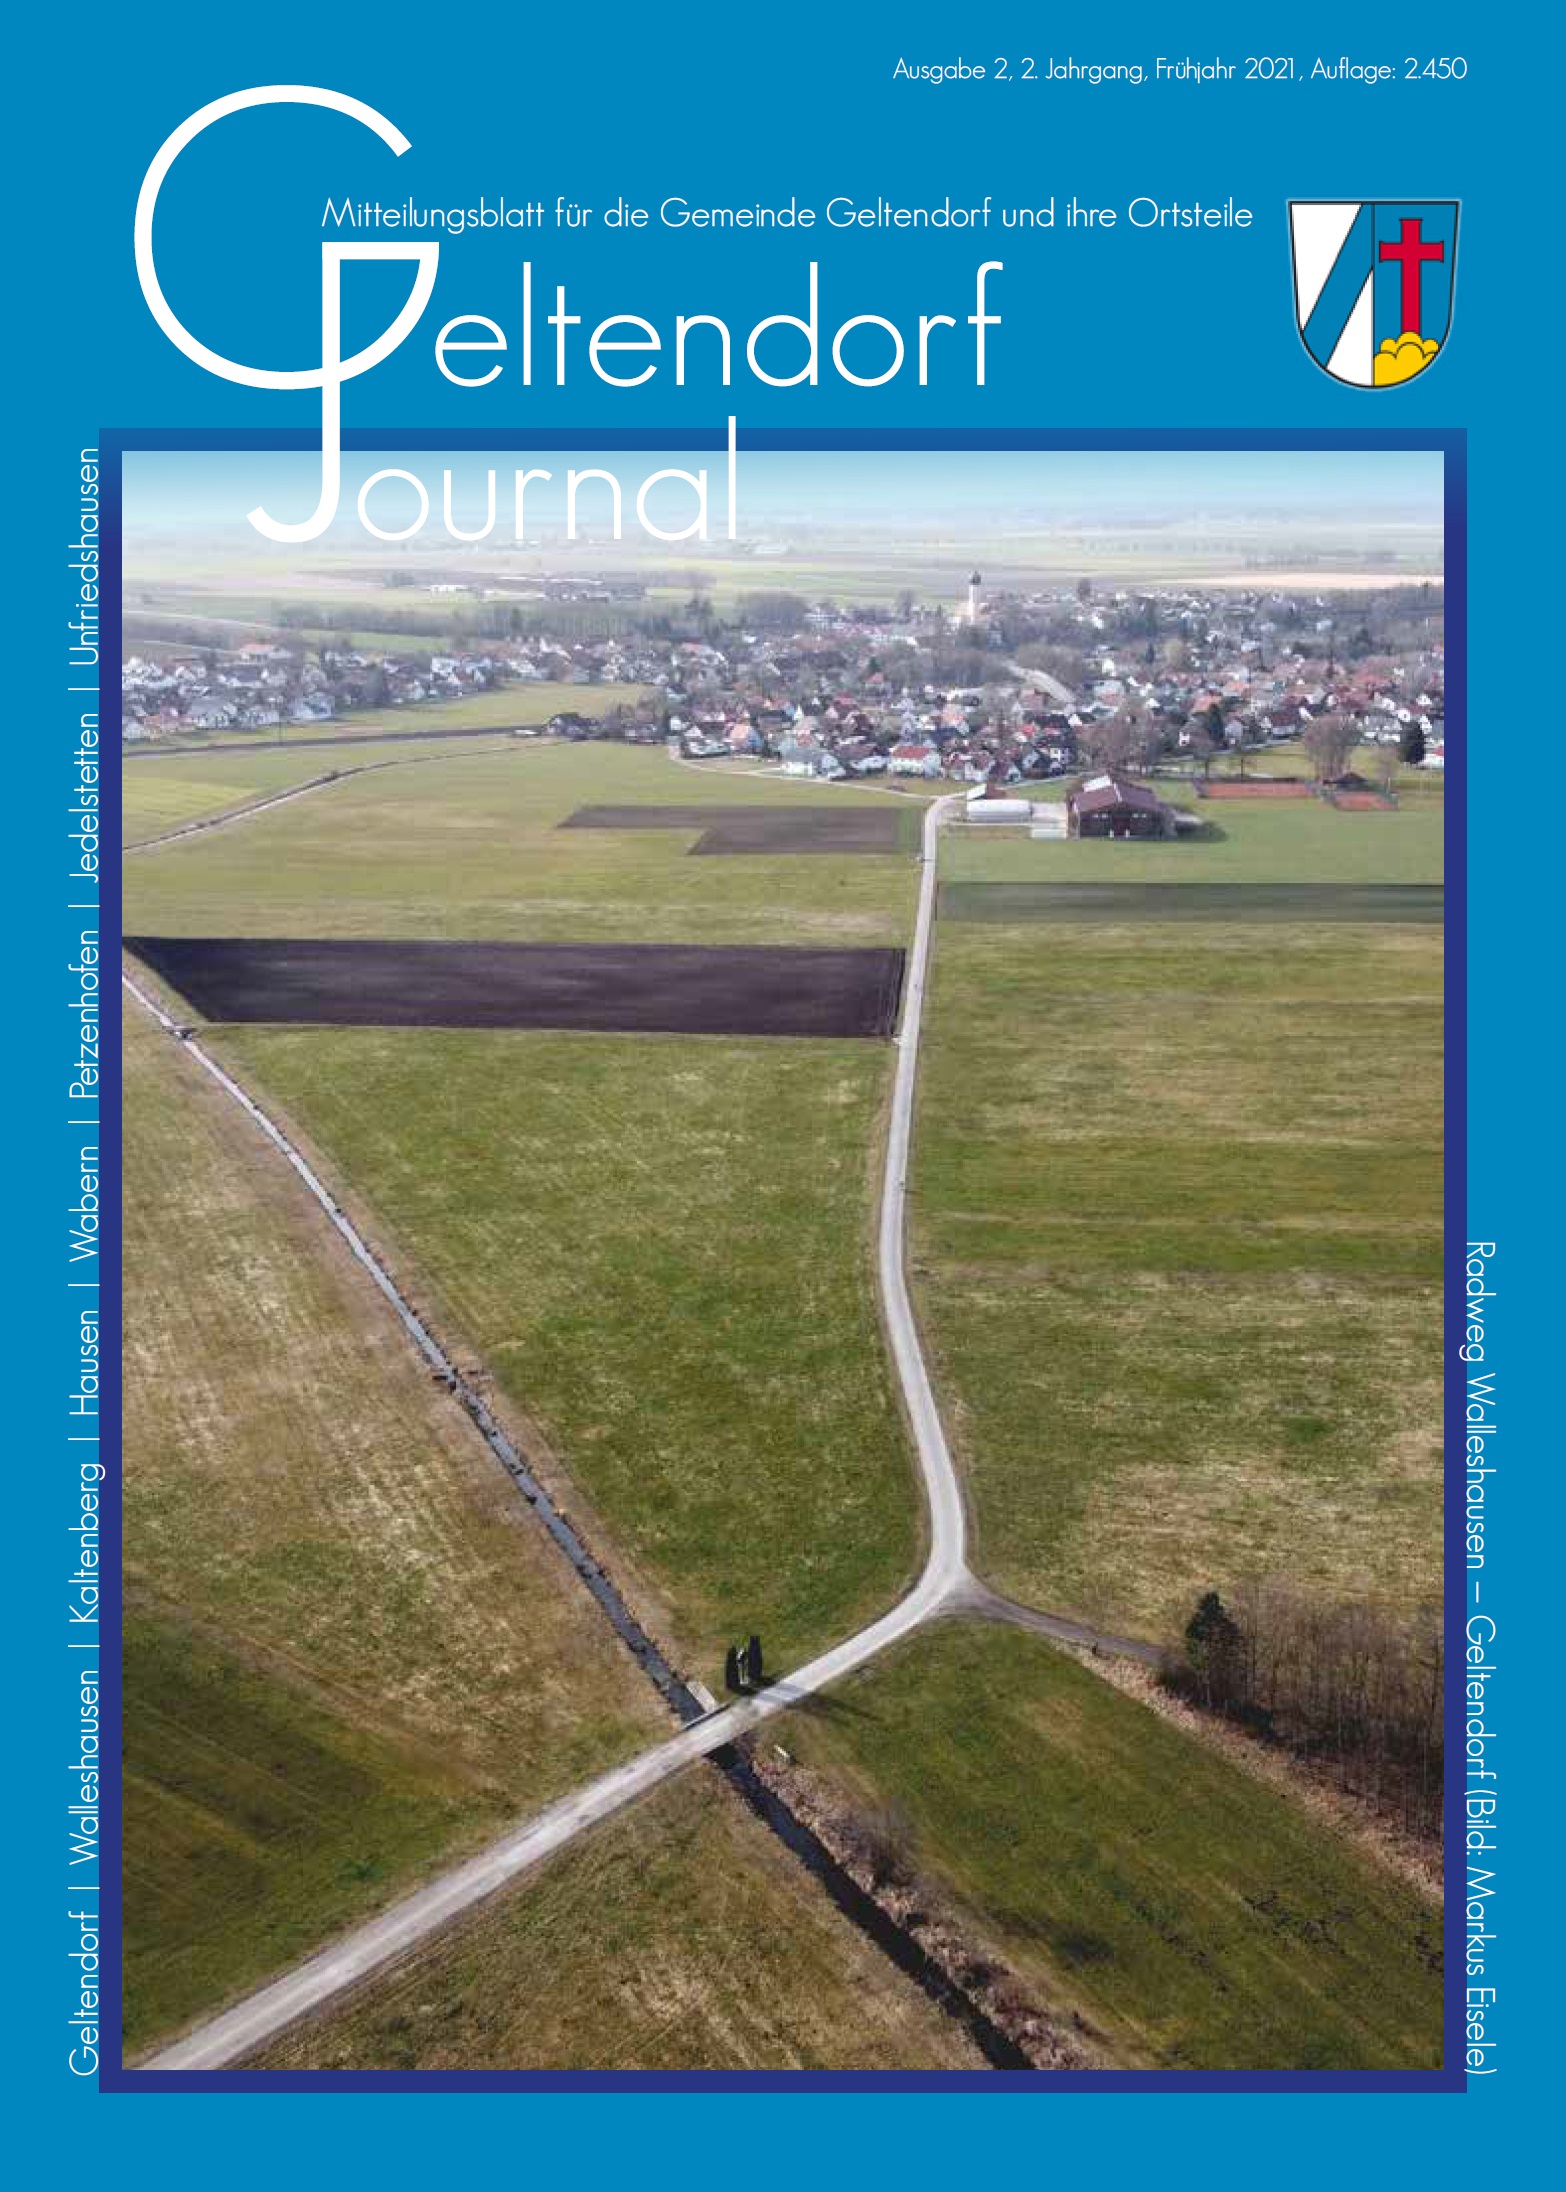 Geltendorf Journal Nr. 2 - 2021 (Frühjahr 2021)